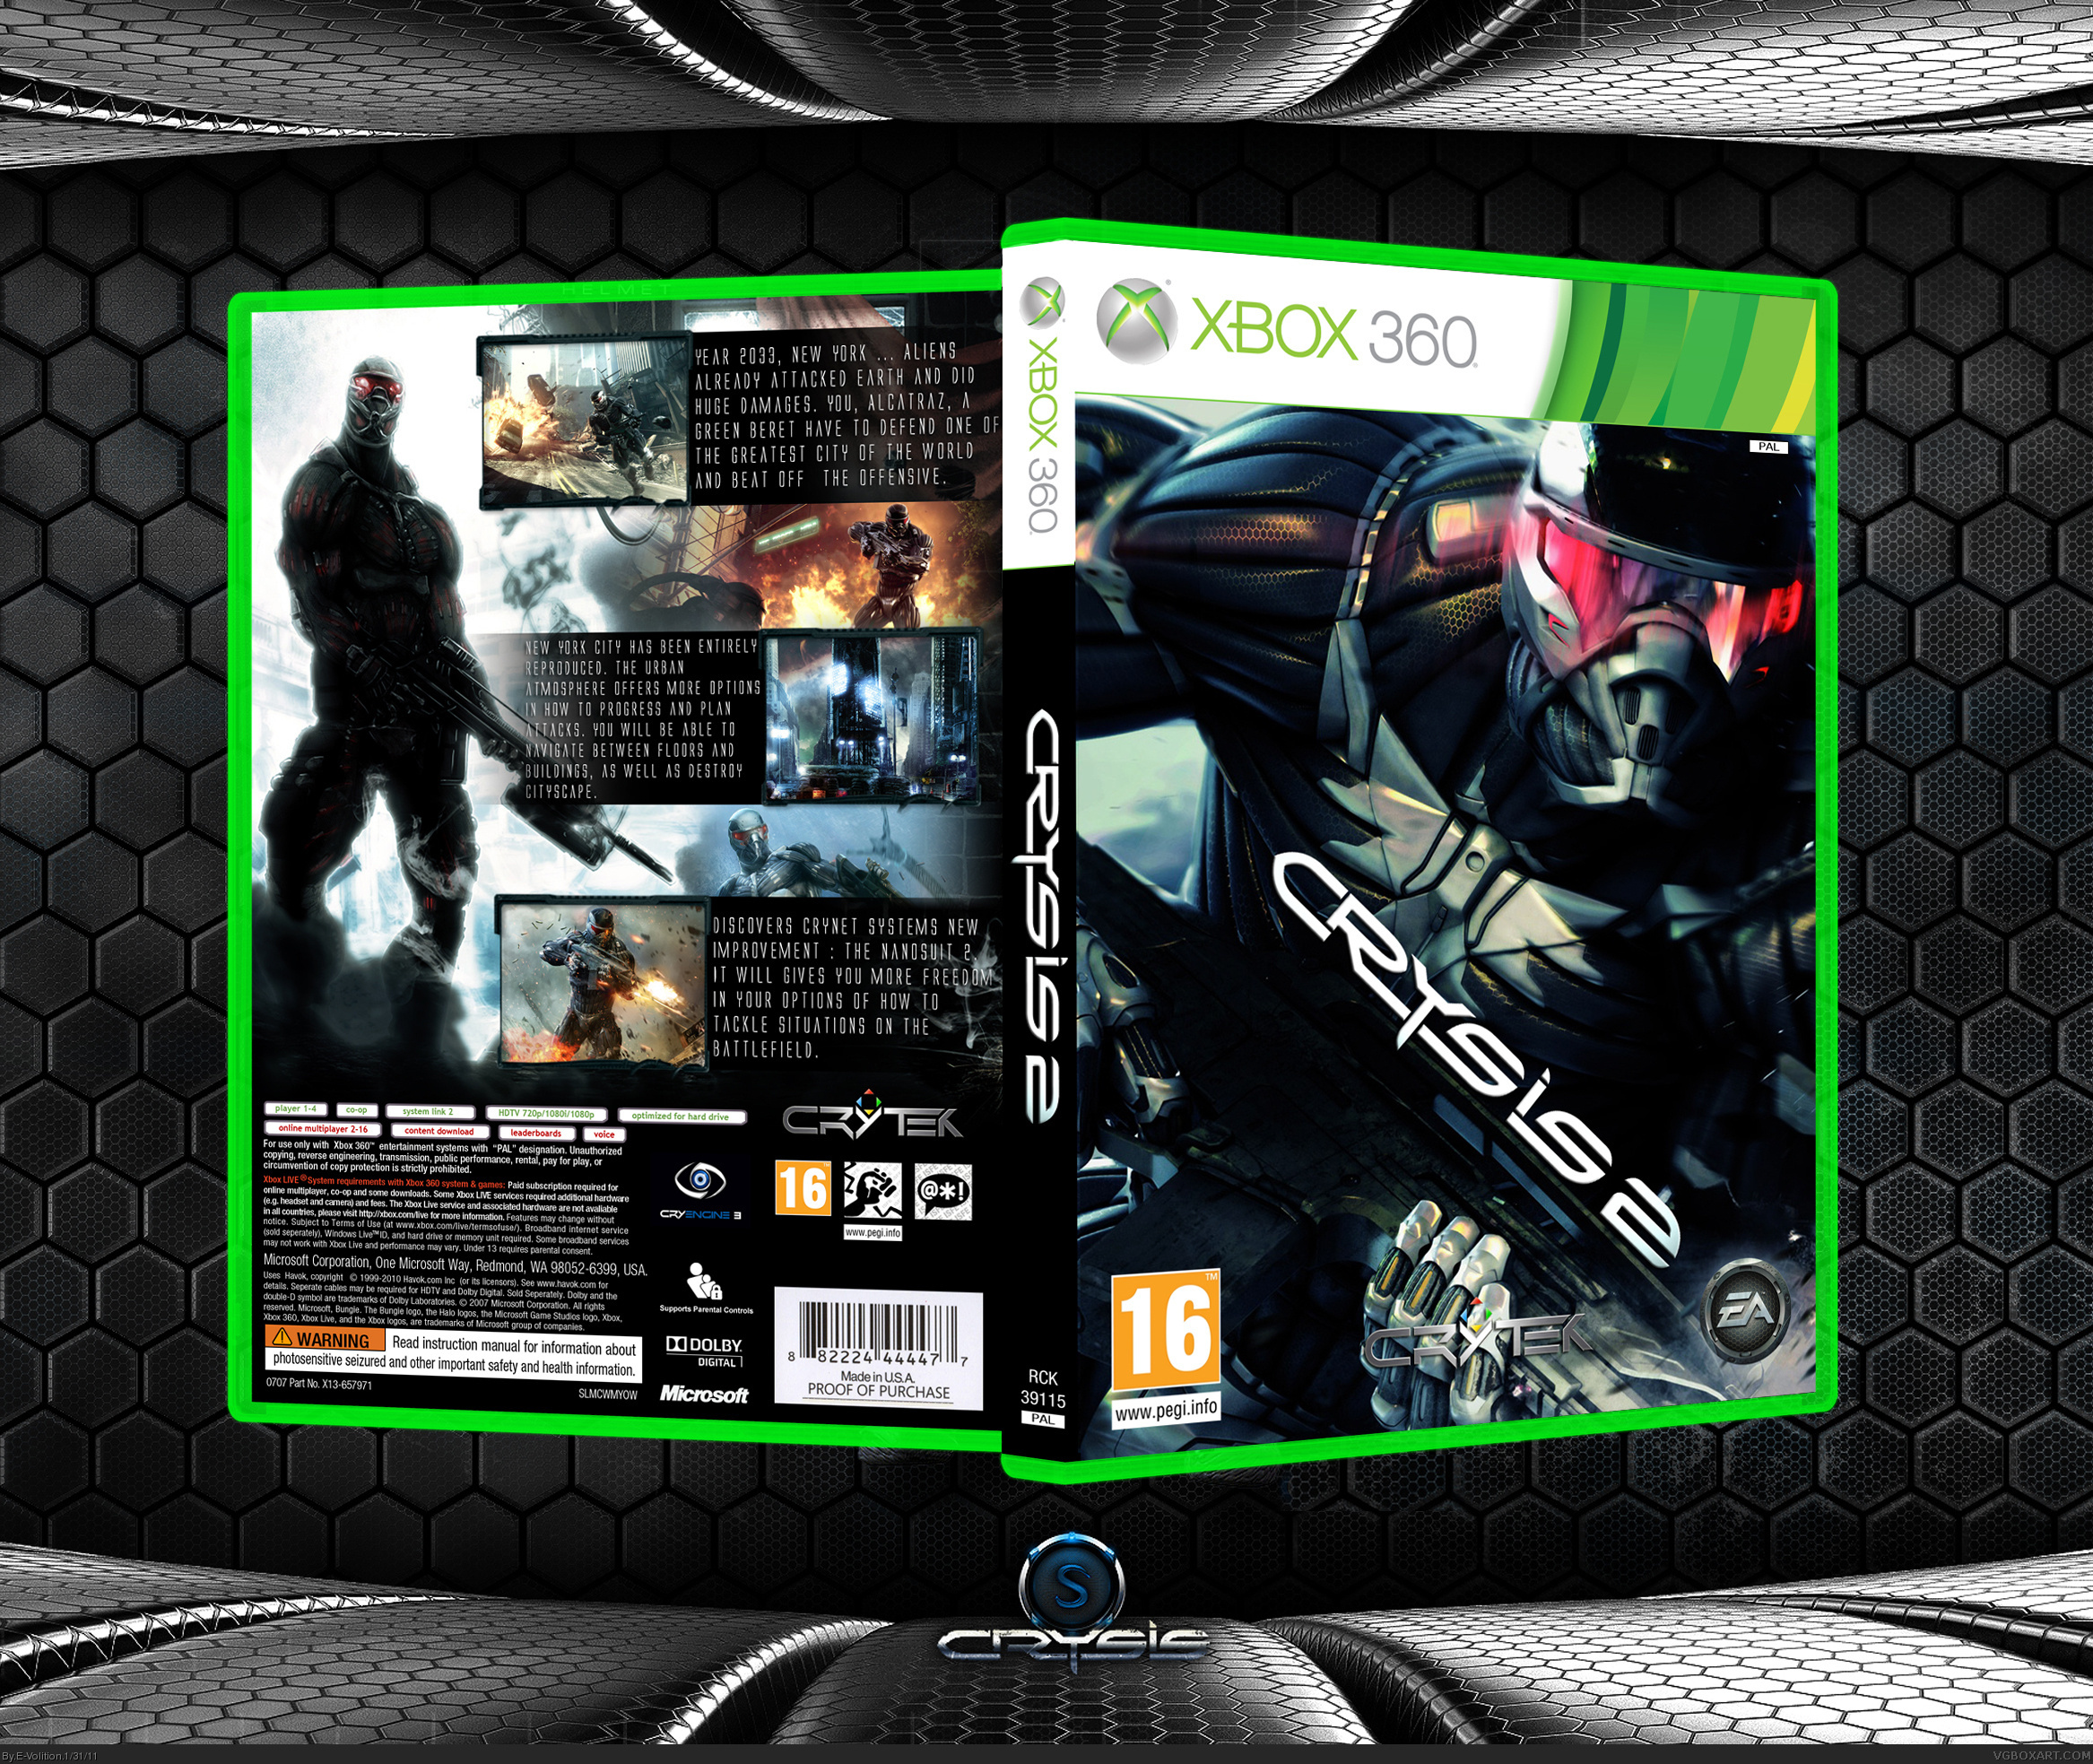 Crysis xbox 360. Crysis 1 Xbox 360. Crysis Trilogy Xbox 360 обложка. Crysis 2 Xbox 360 обложка. Крайсис 2 на хбокс 360.